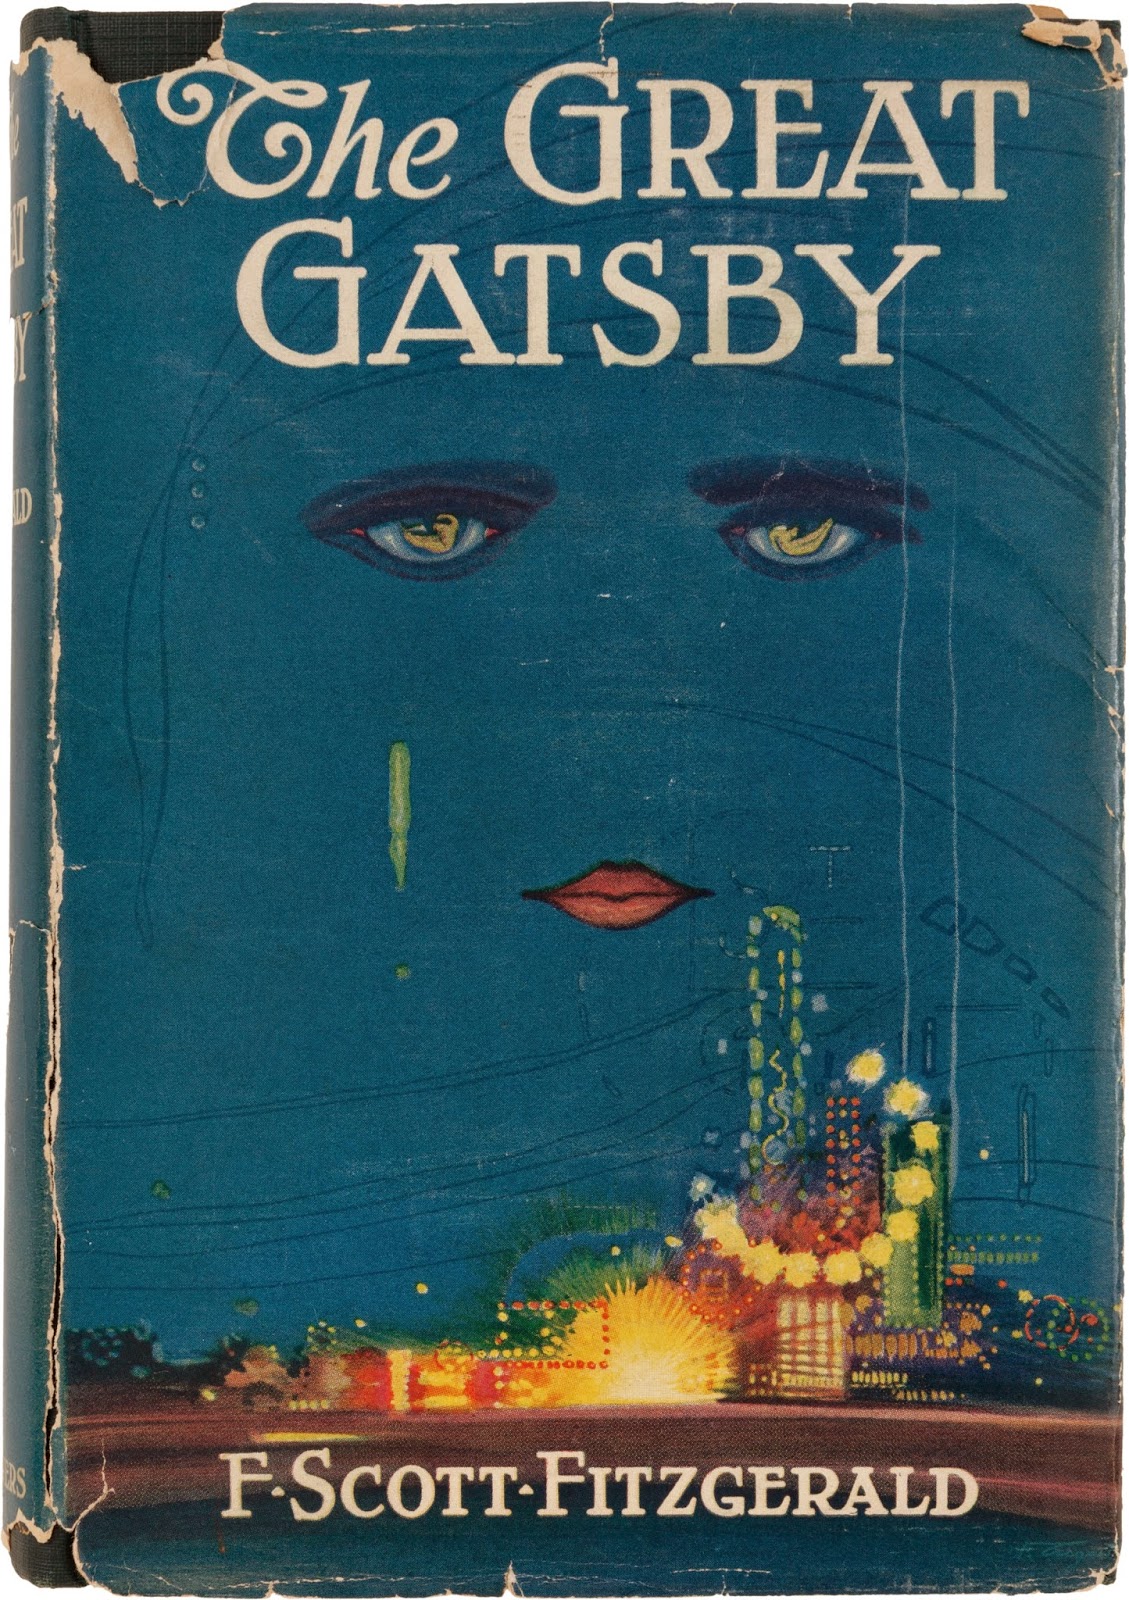 il grande Gatsby